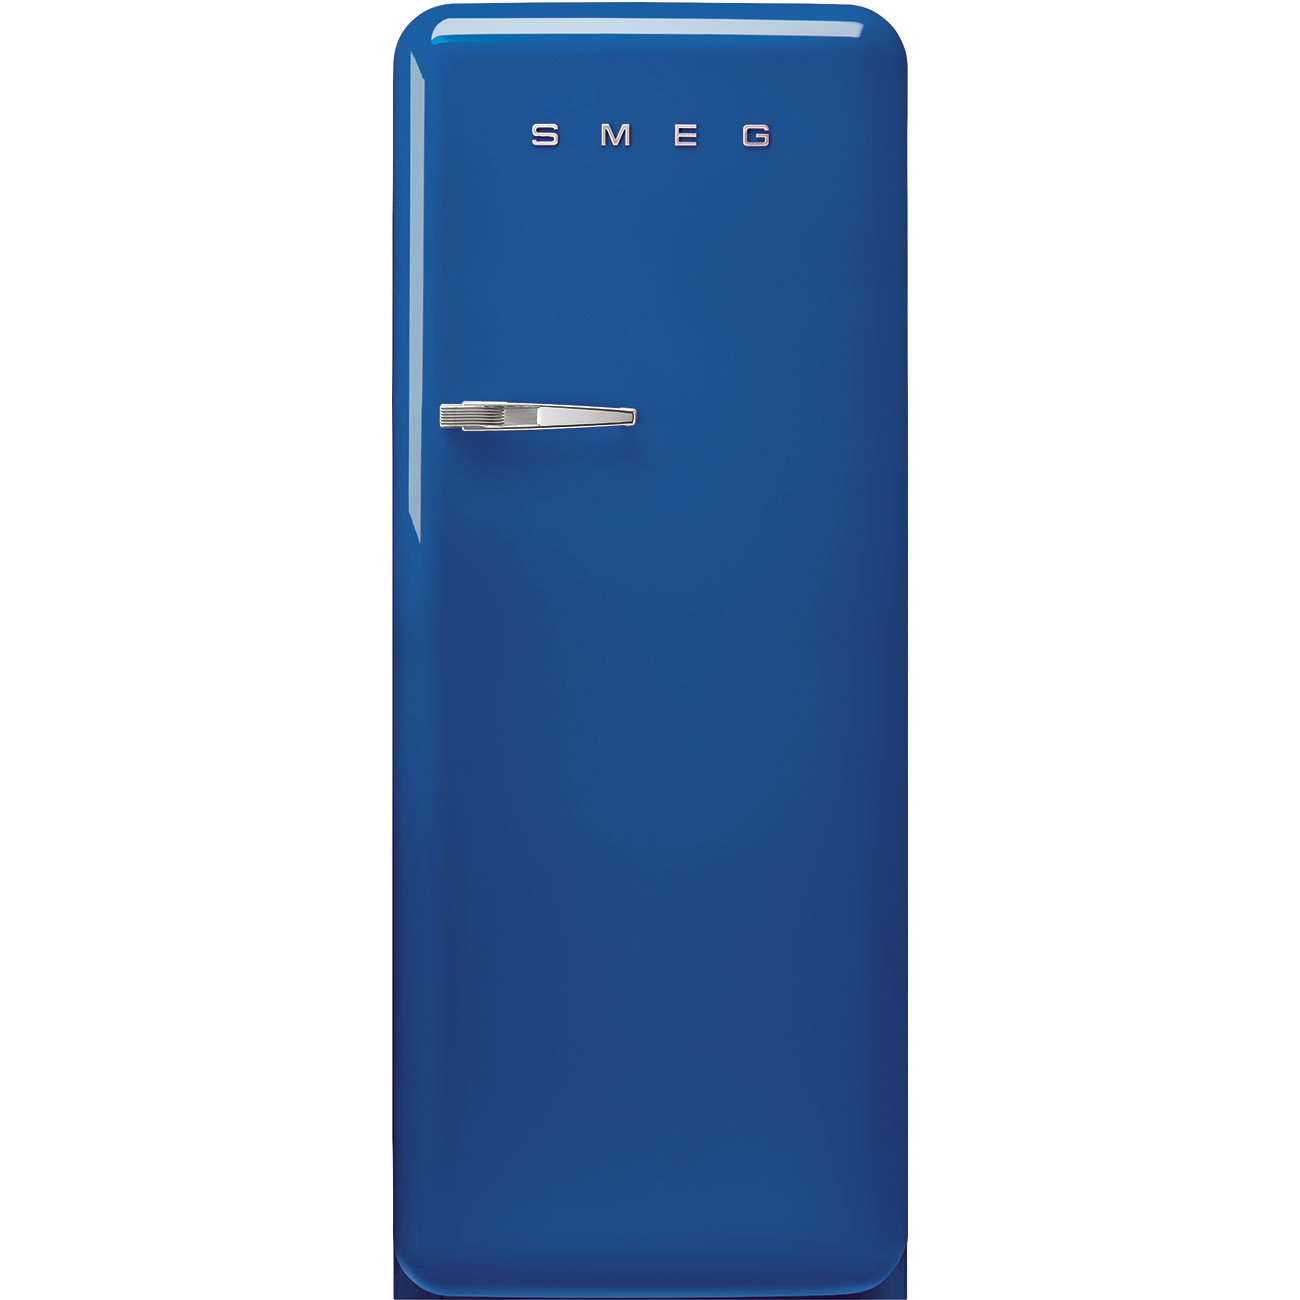 Blue refrigerator - Smeg_1